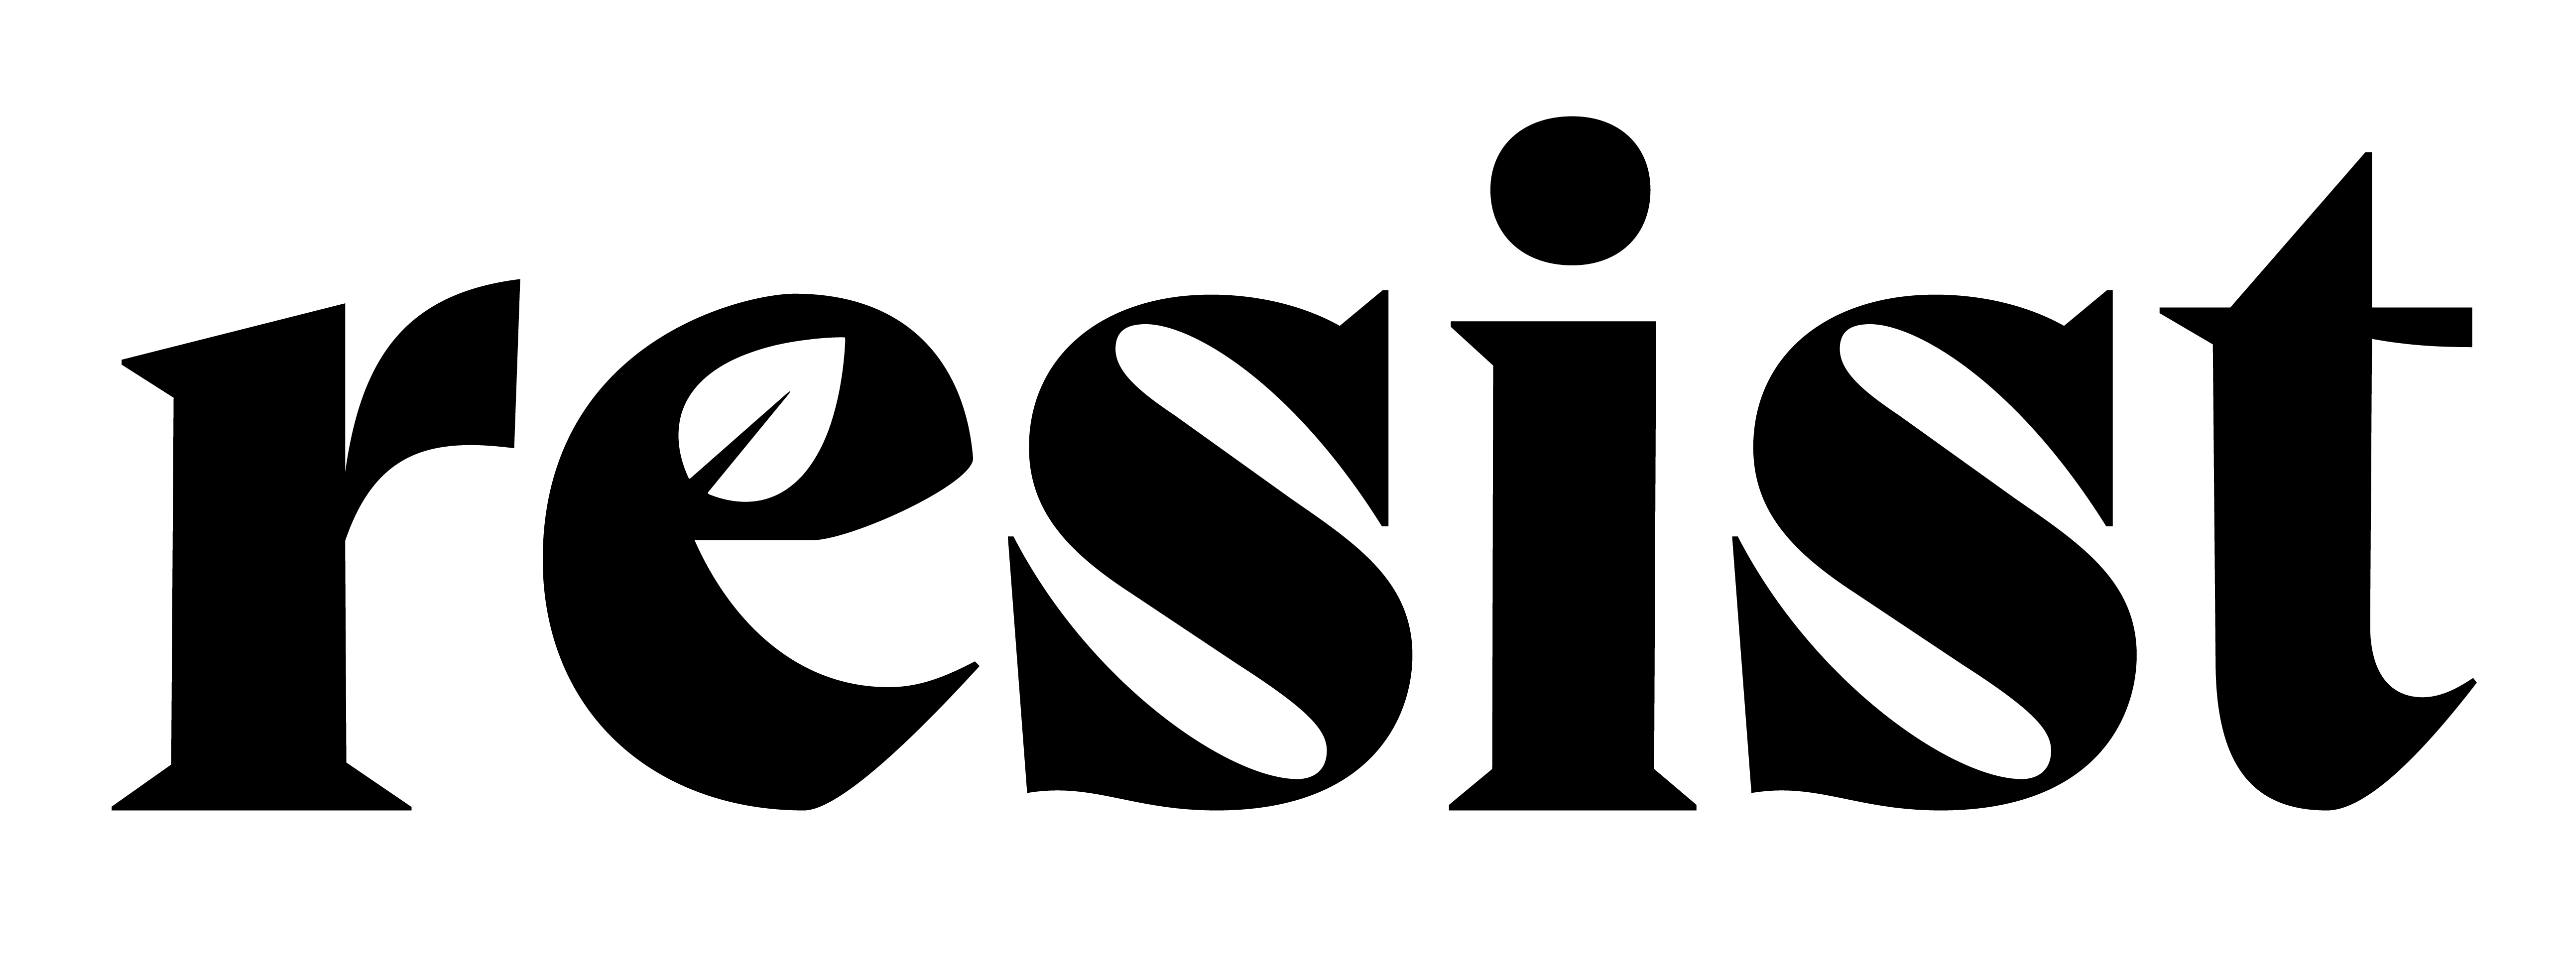 Resist Logo in Black